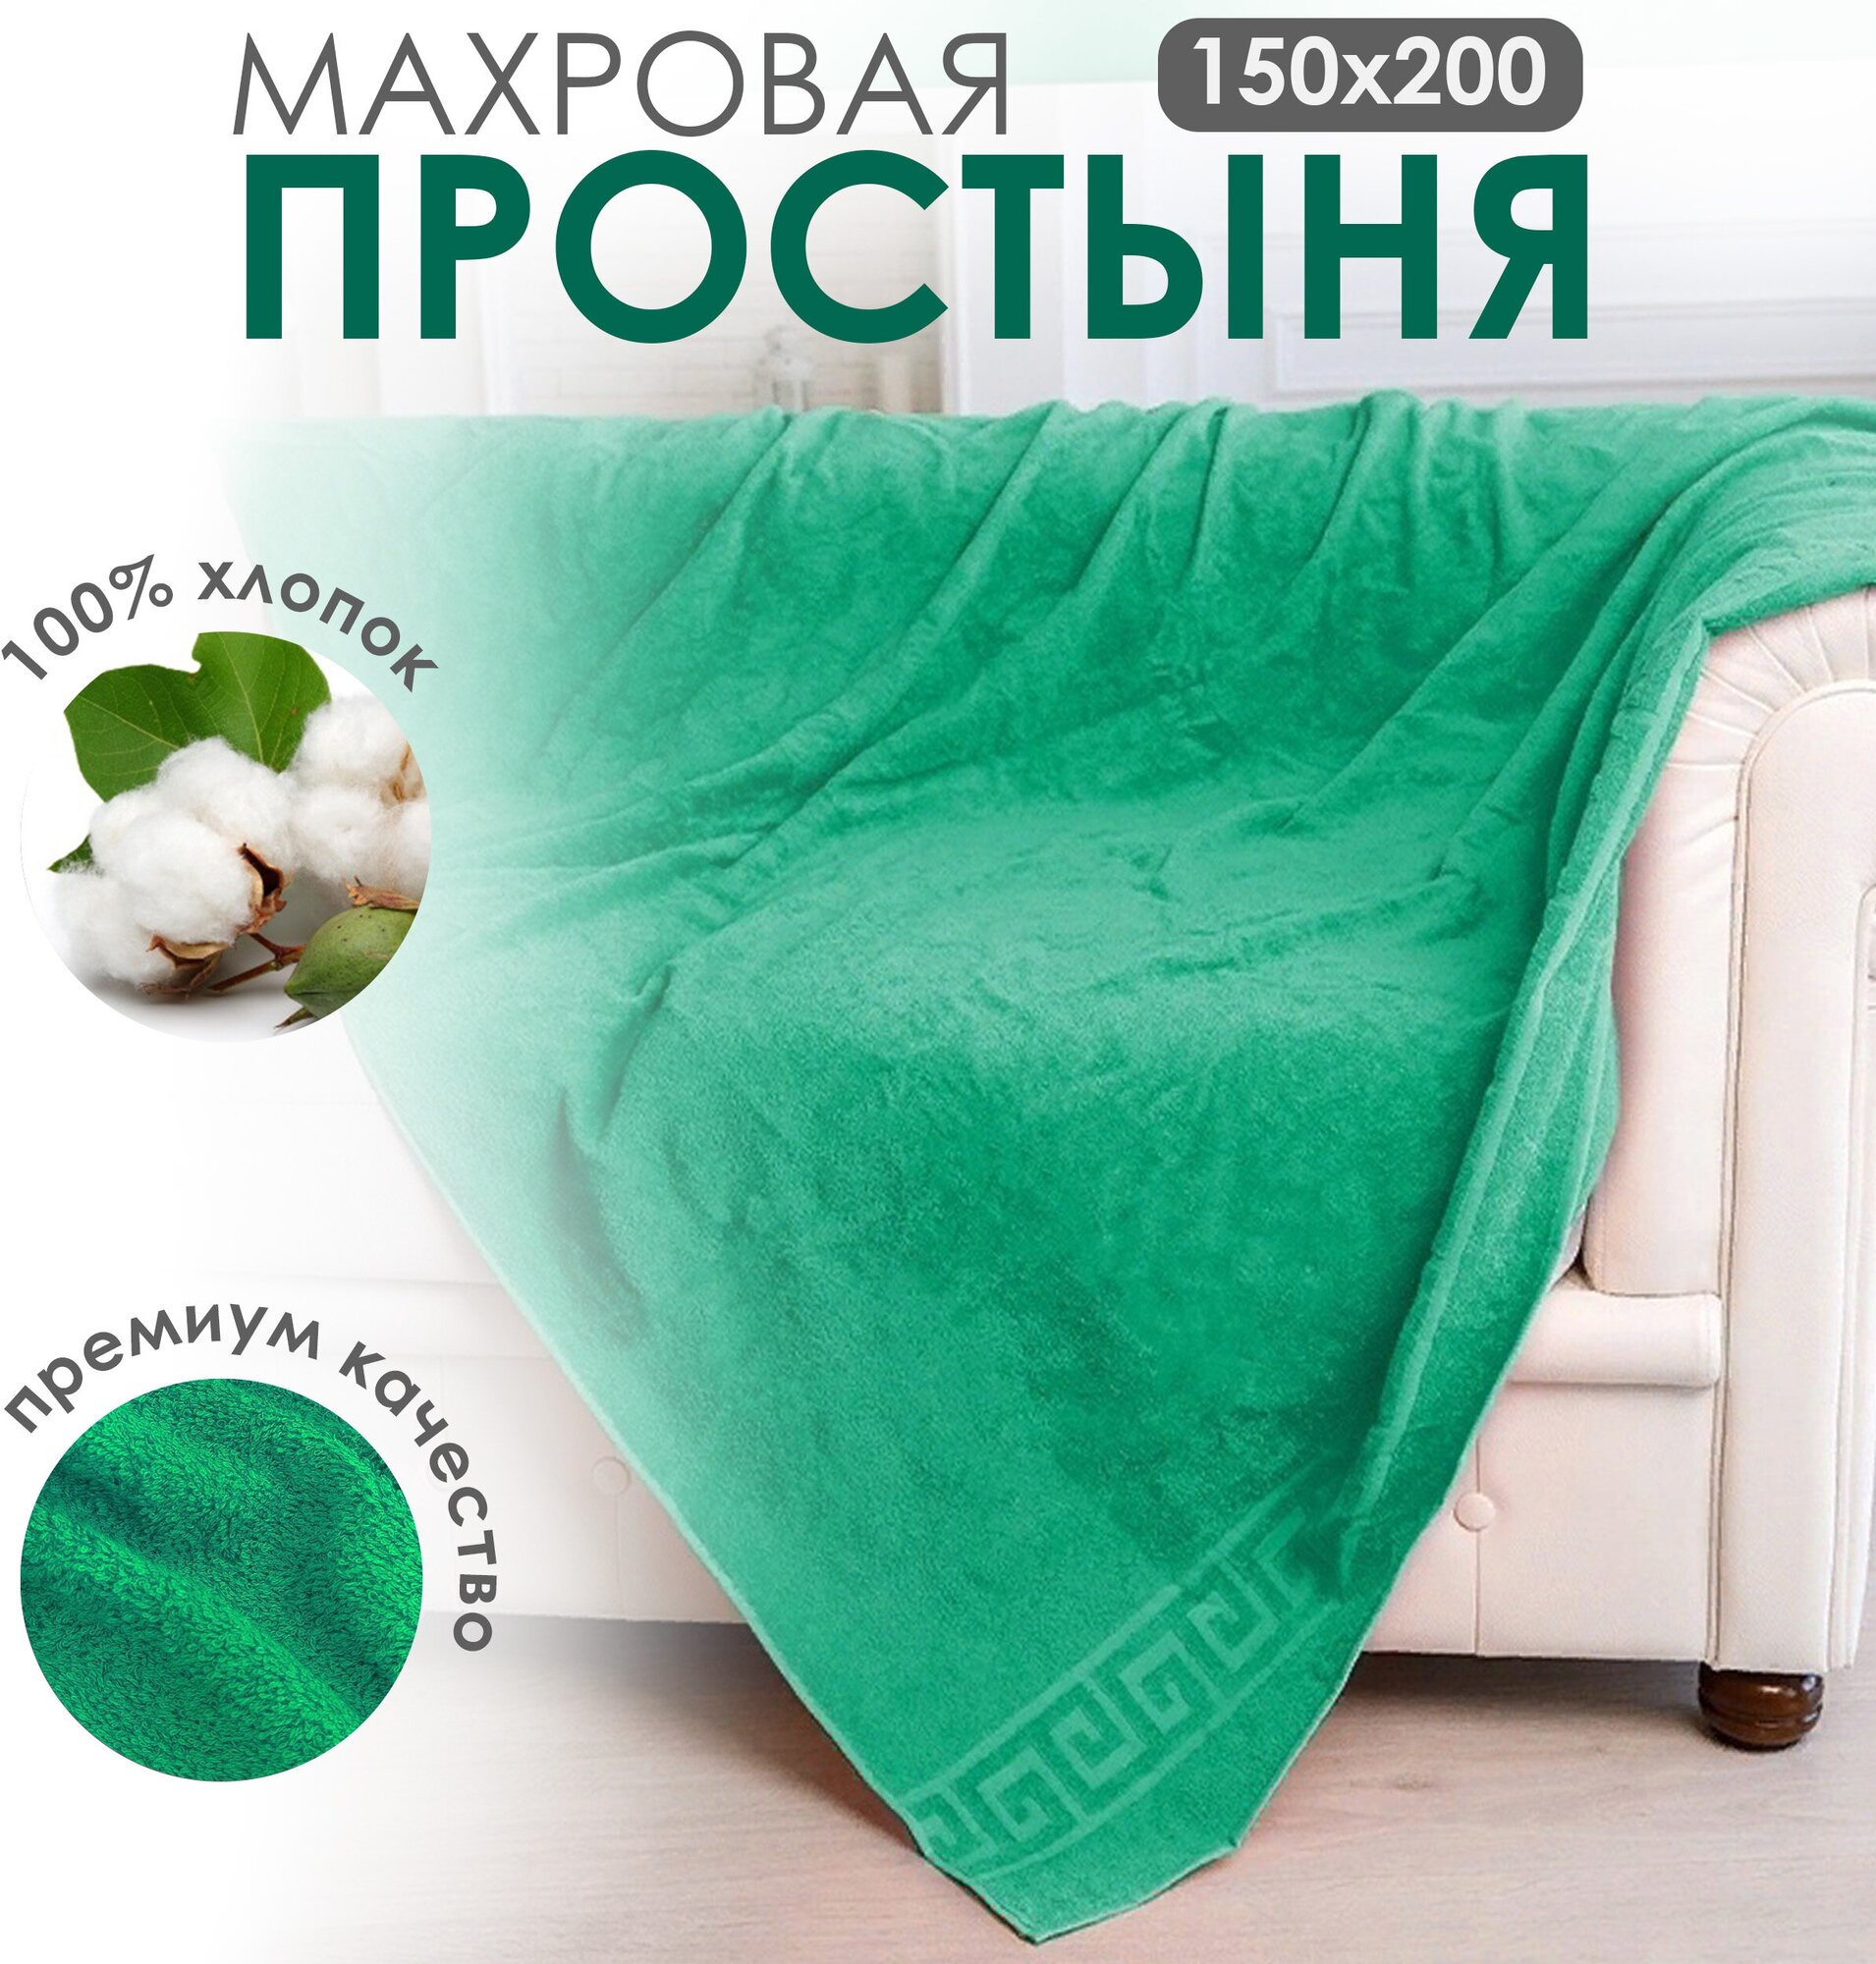 Простыня махровая полуторная, постельное белье для спальни, темно-зеленая